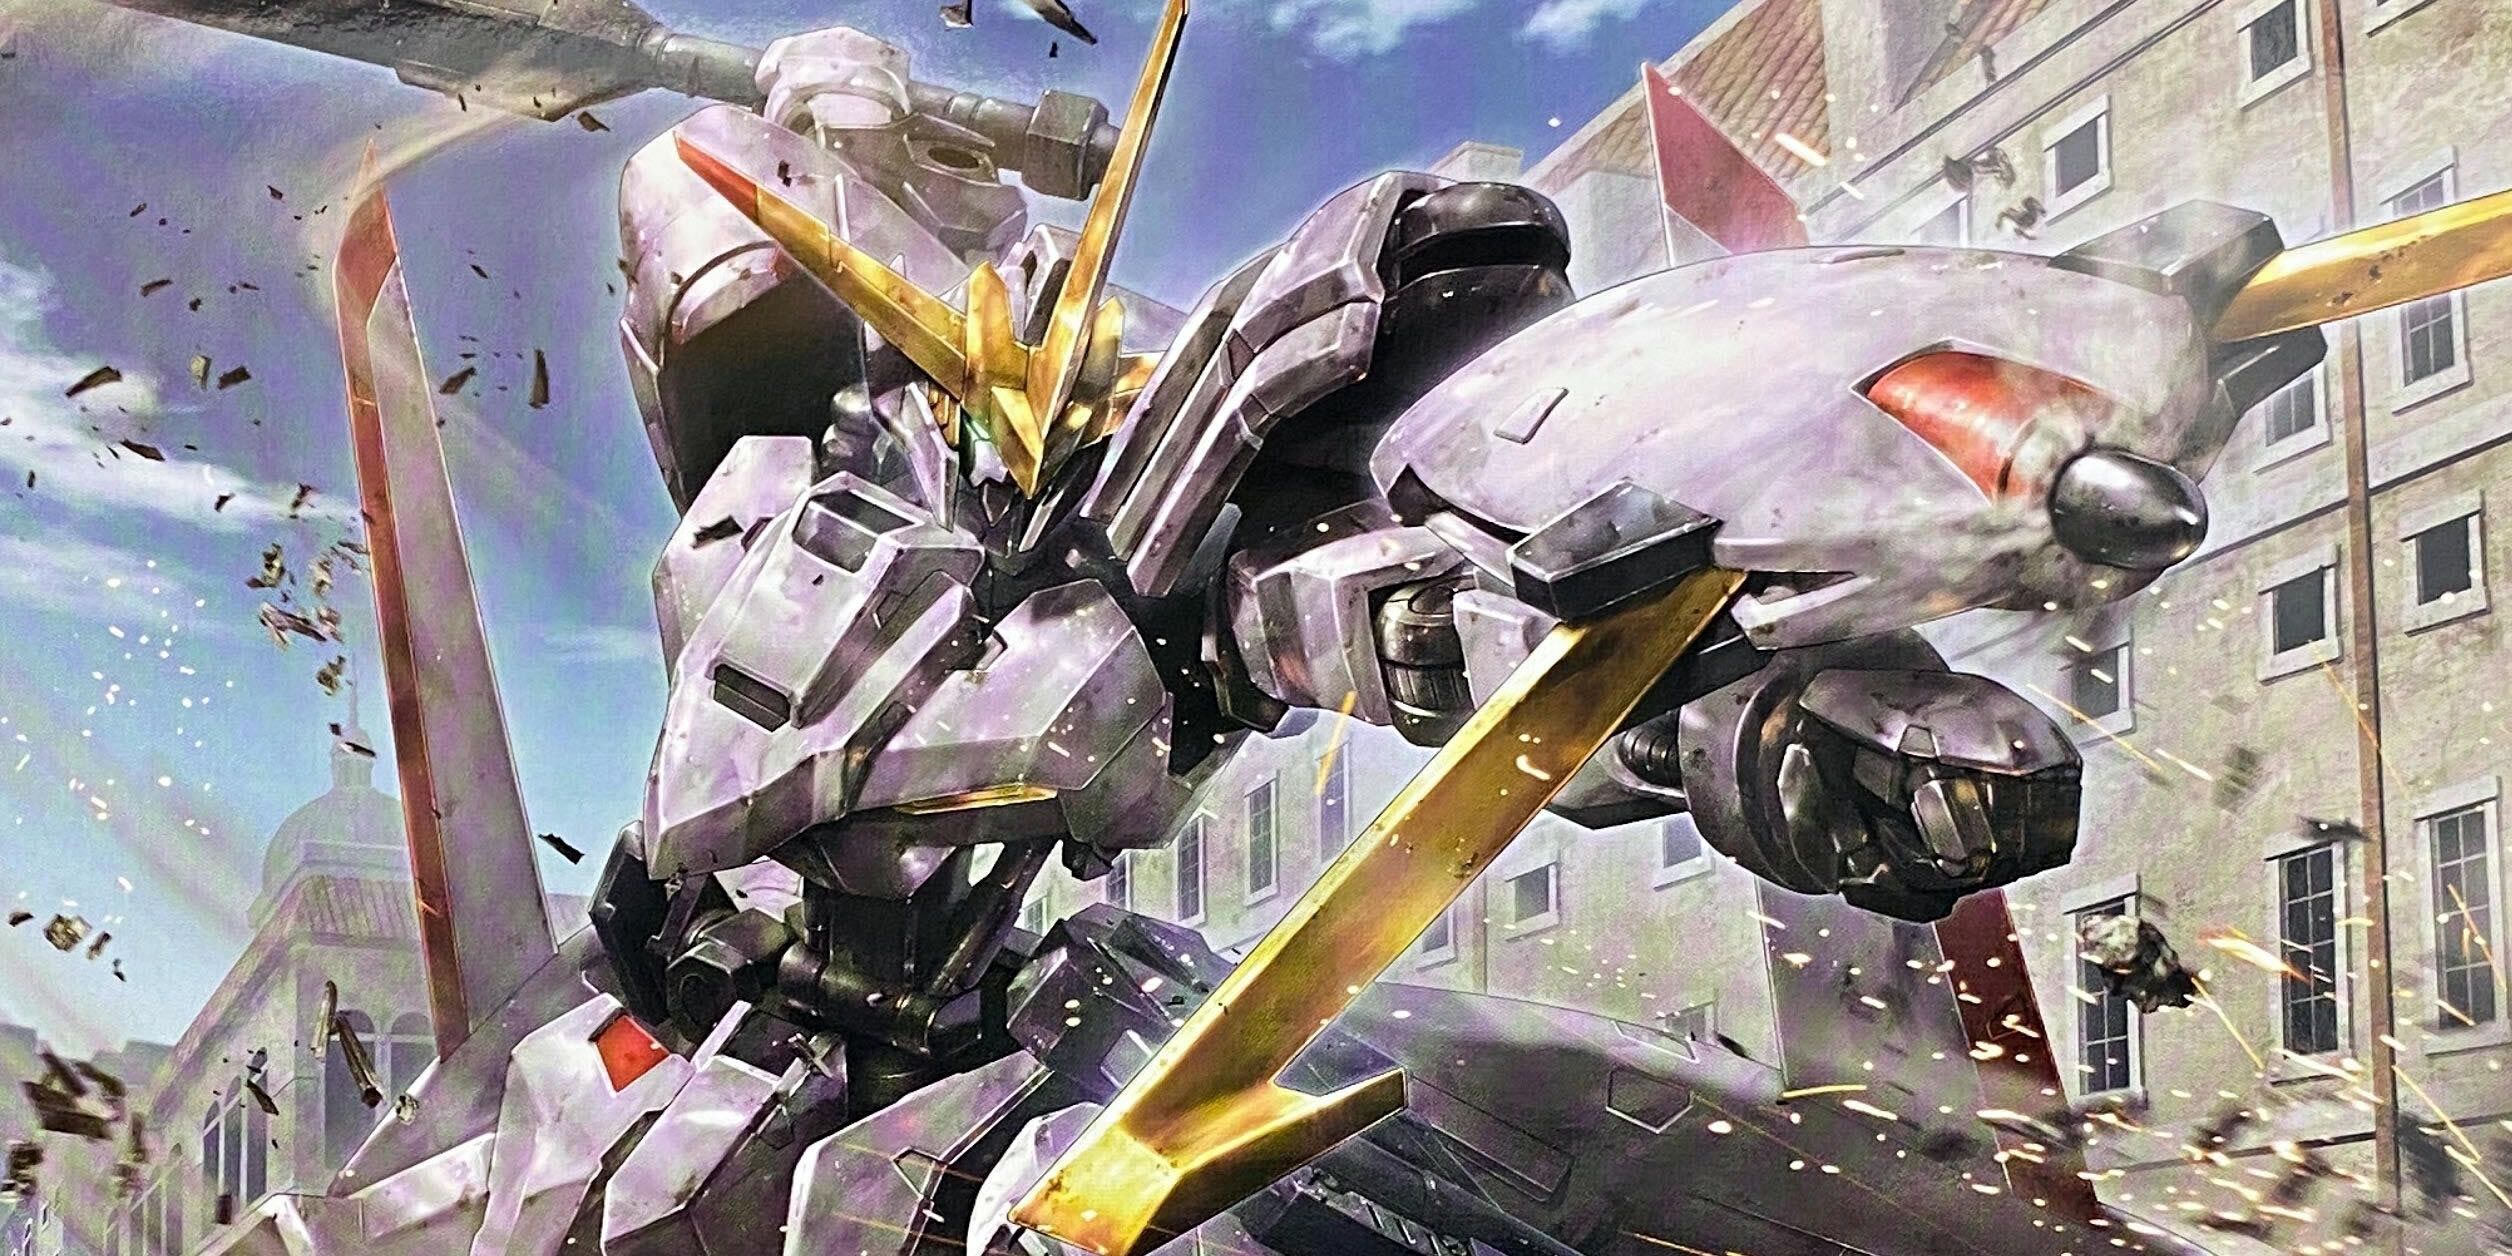 Amazon.com: Mobile Suit Gundam 00: Season 1 : Movies & TV